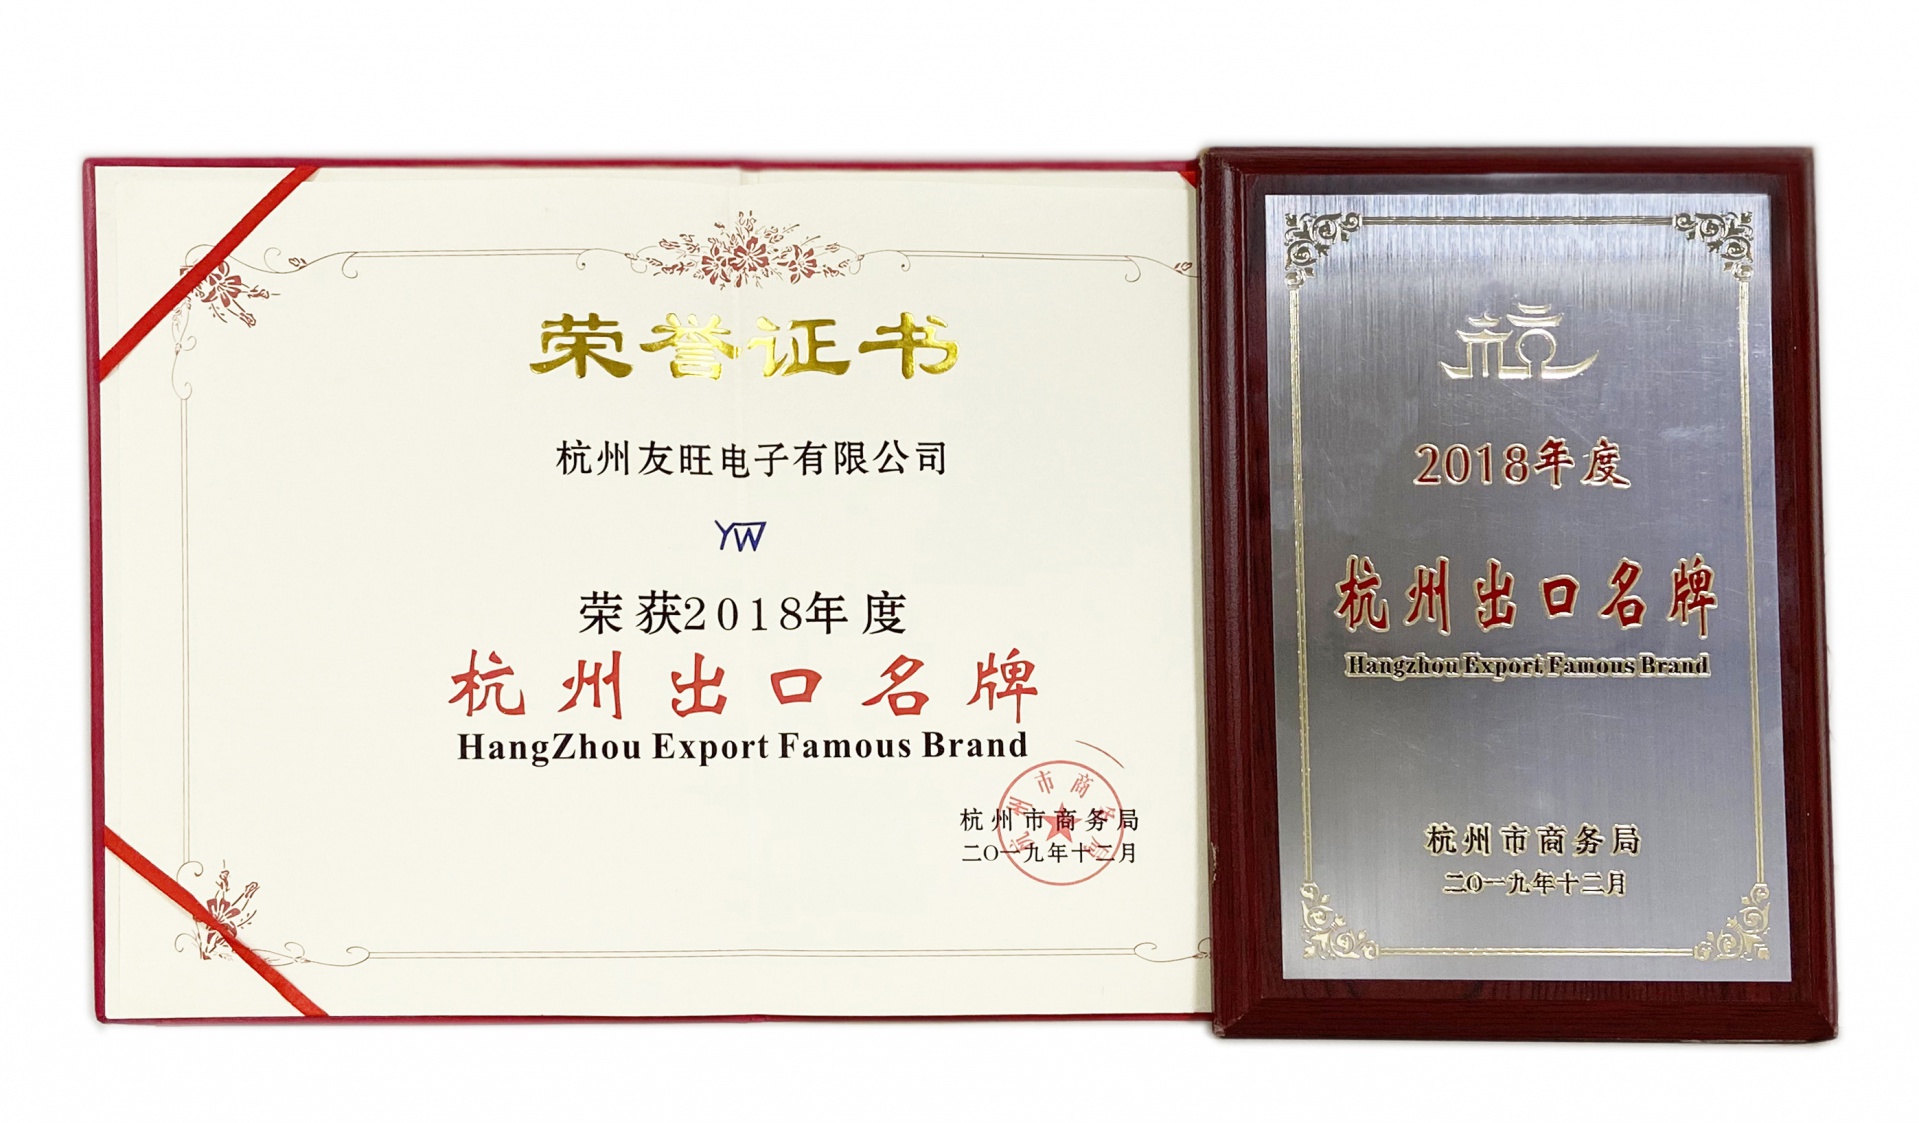 
                            我公司获得“杭州出口名牌”荣誉